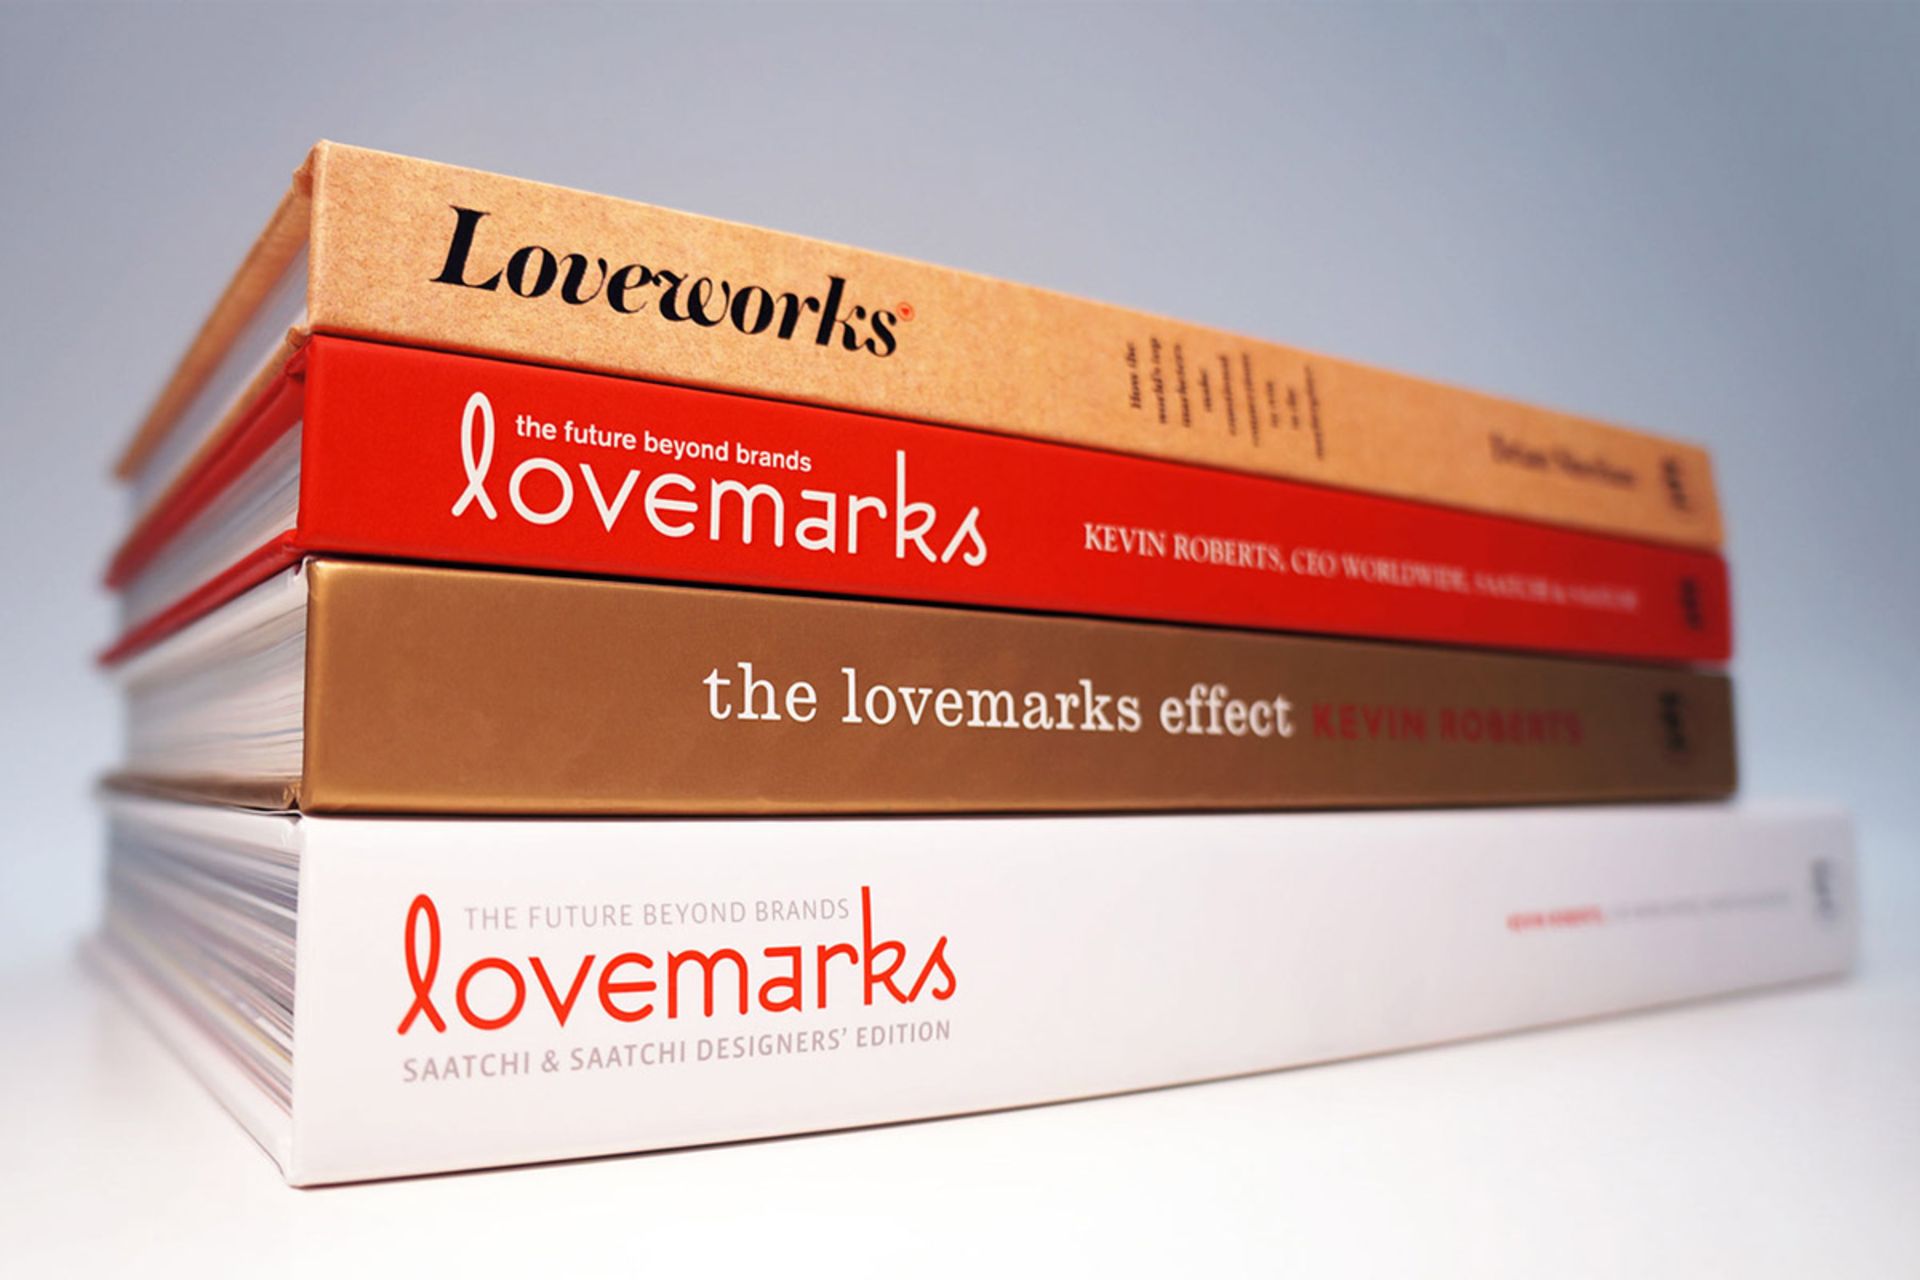 مرجع متخصصين ايران جزوه رايگان برند محبوب روبرتز كوين/lovemarks kevin